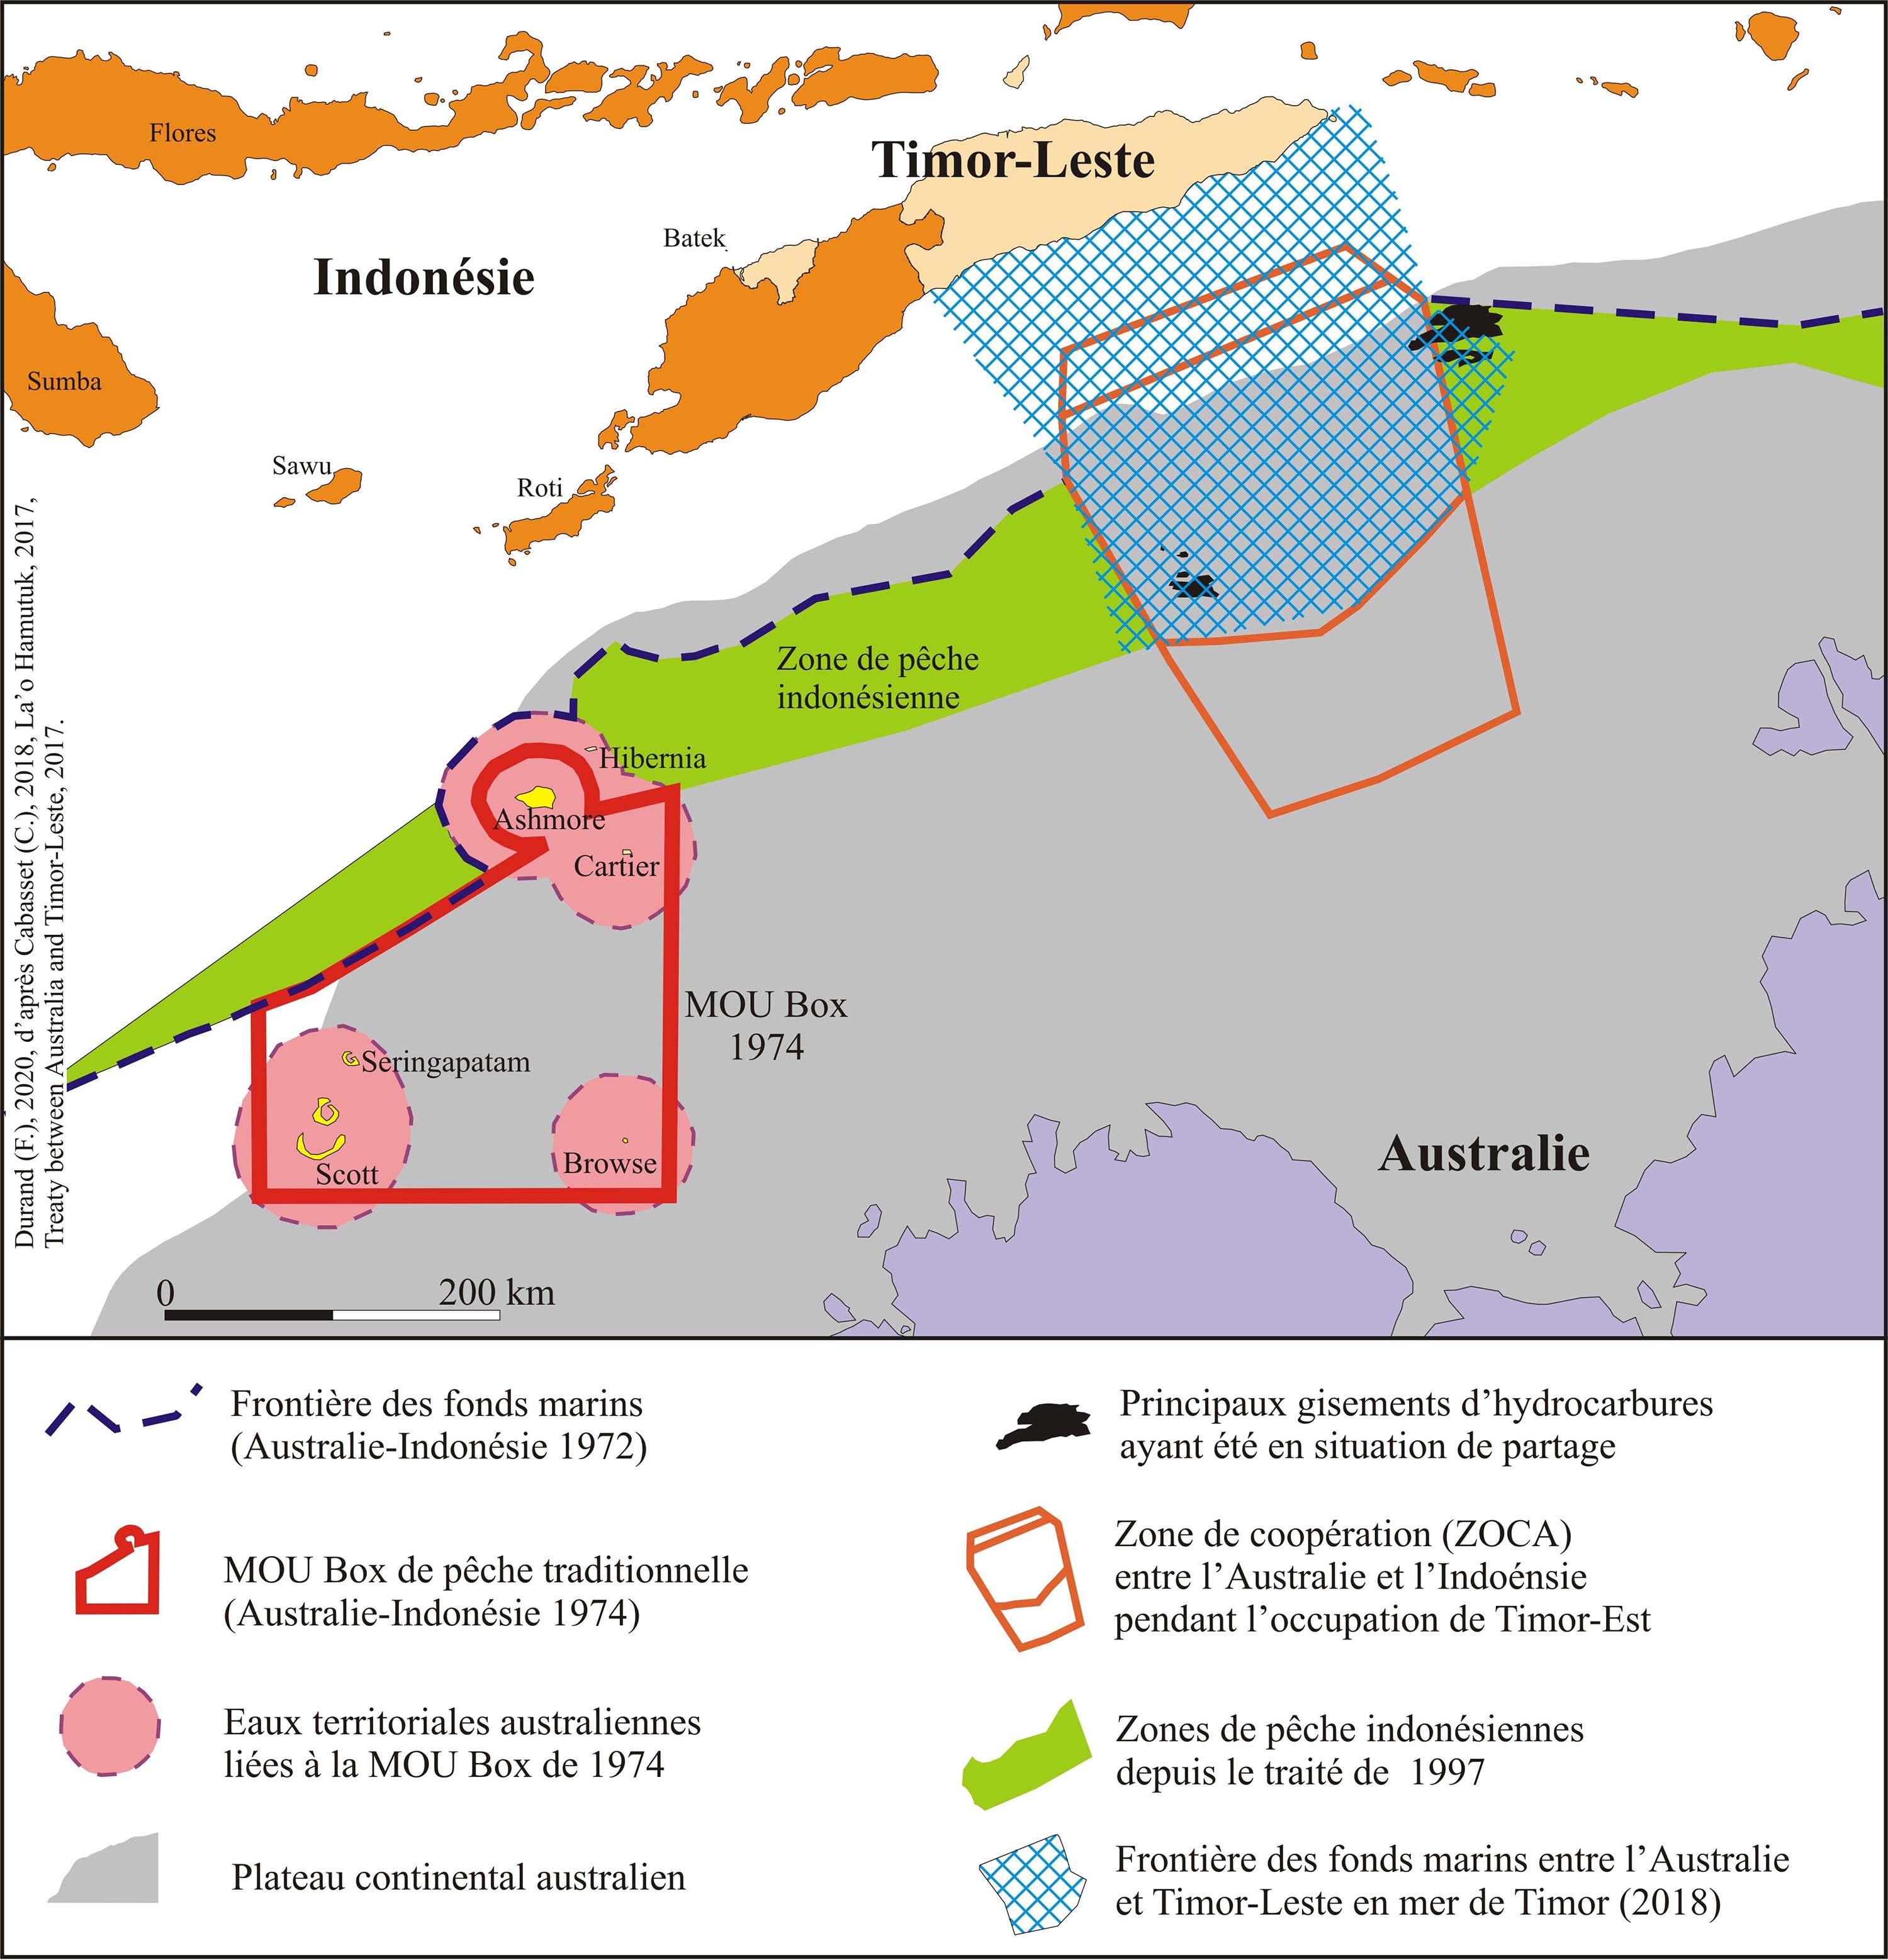 Les superpositions de droits, limites et frontières en mer de Timor (haute définition) (Timor Oriental, indonésie, Australie)